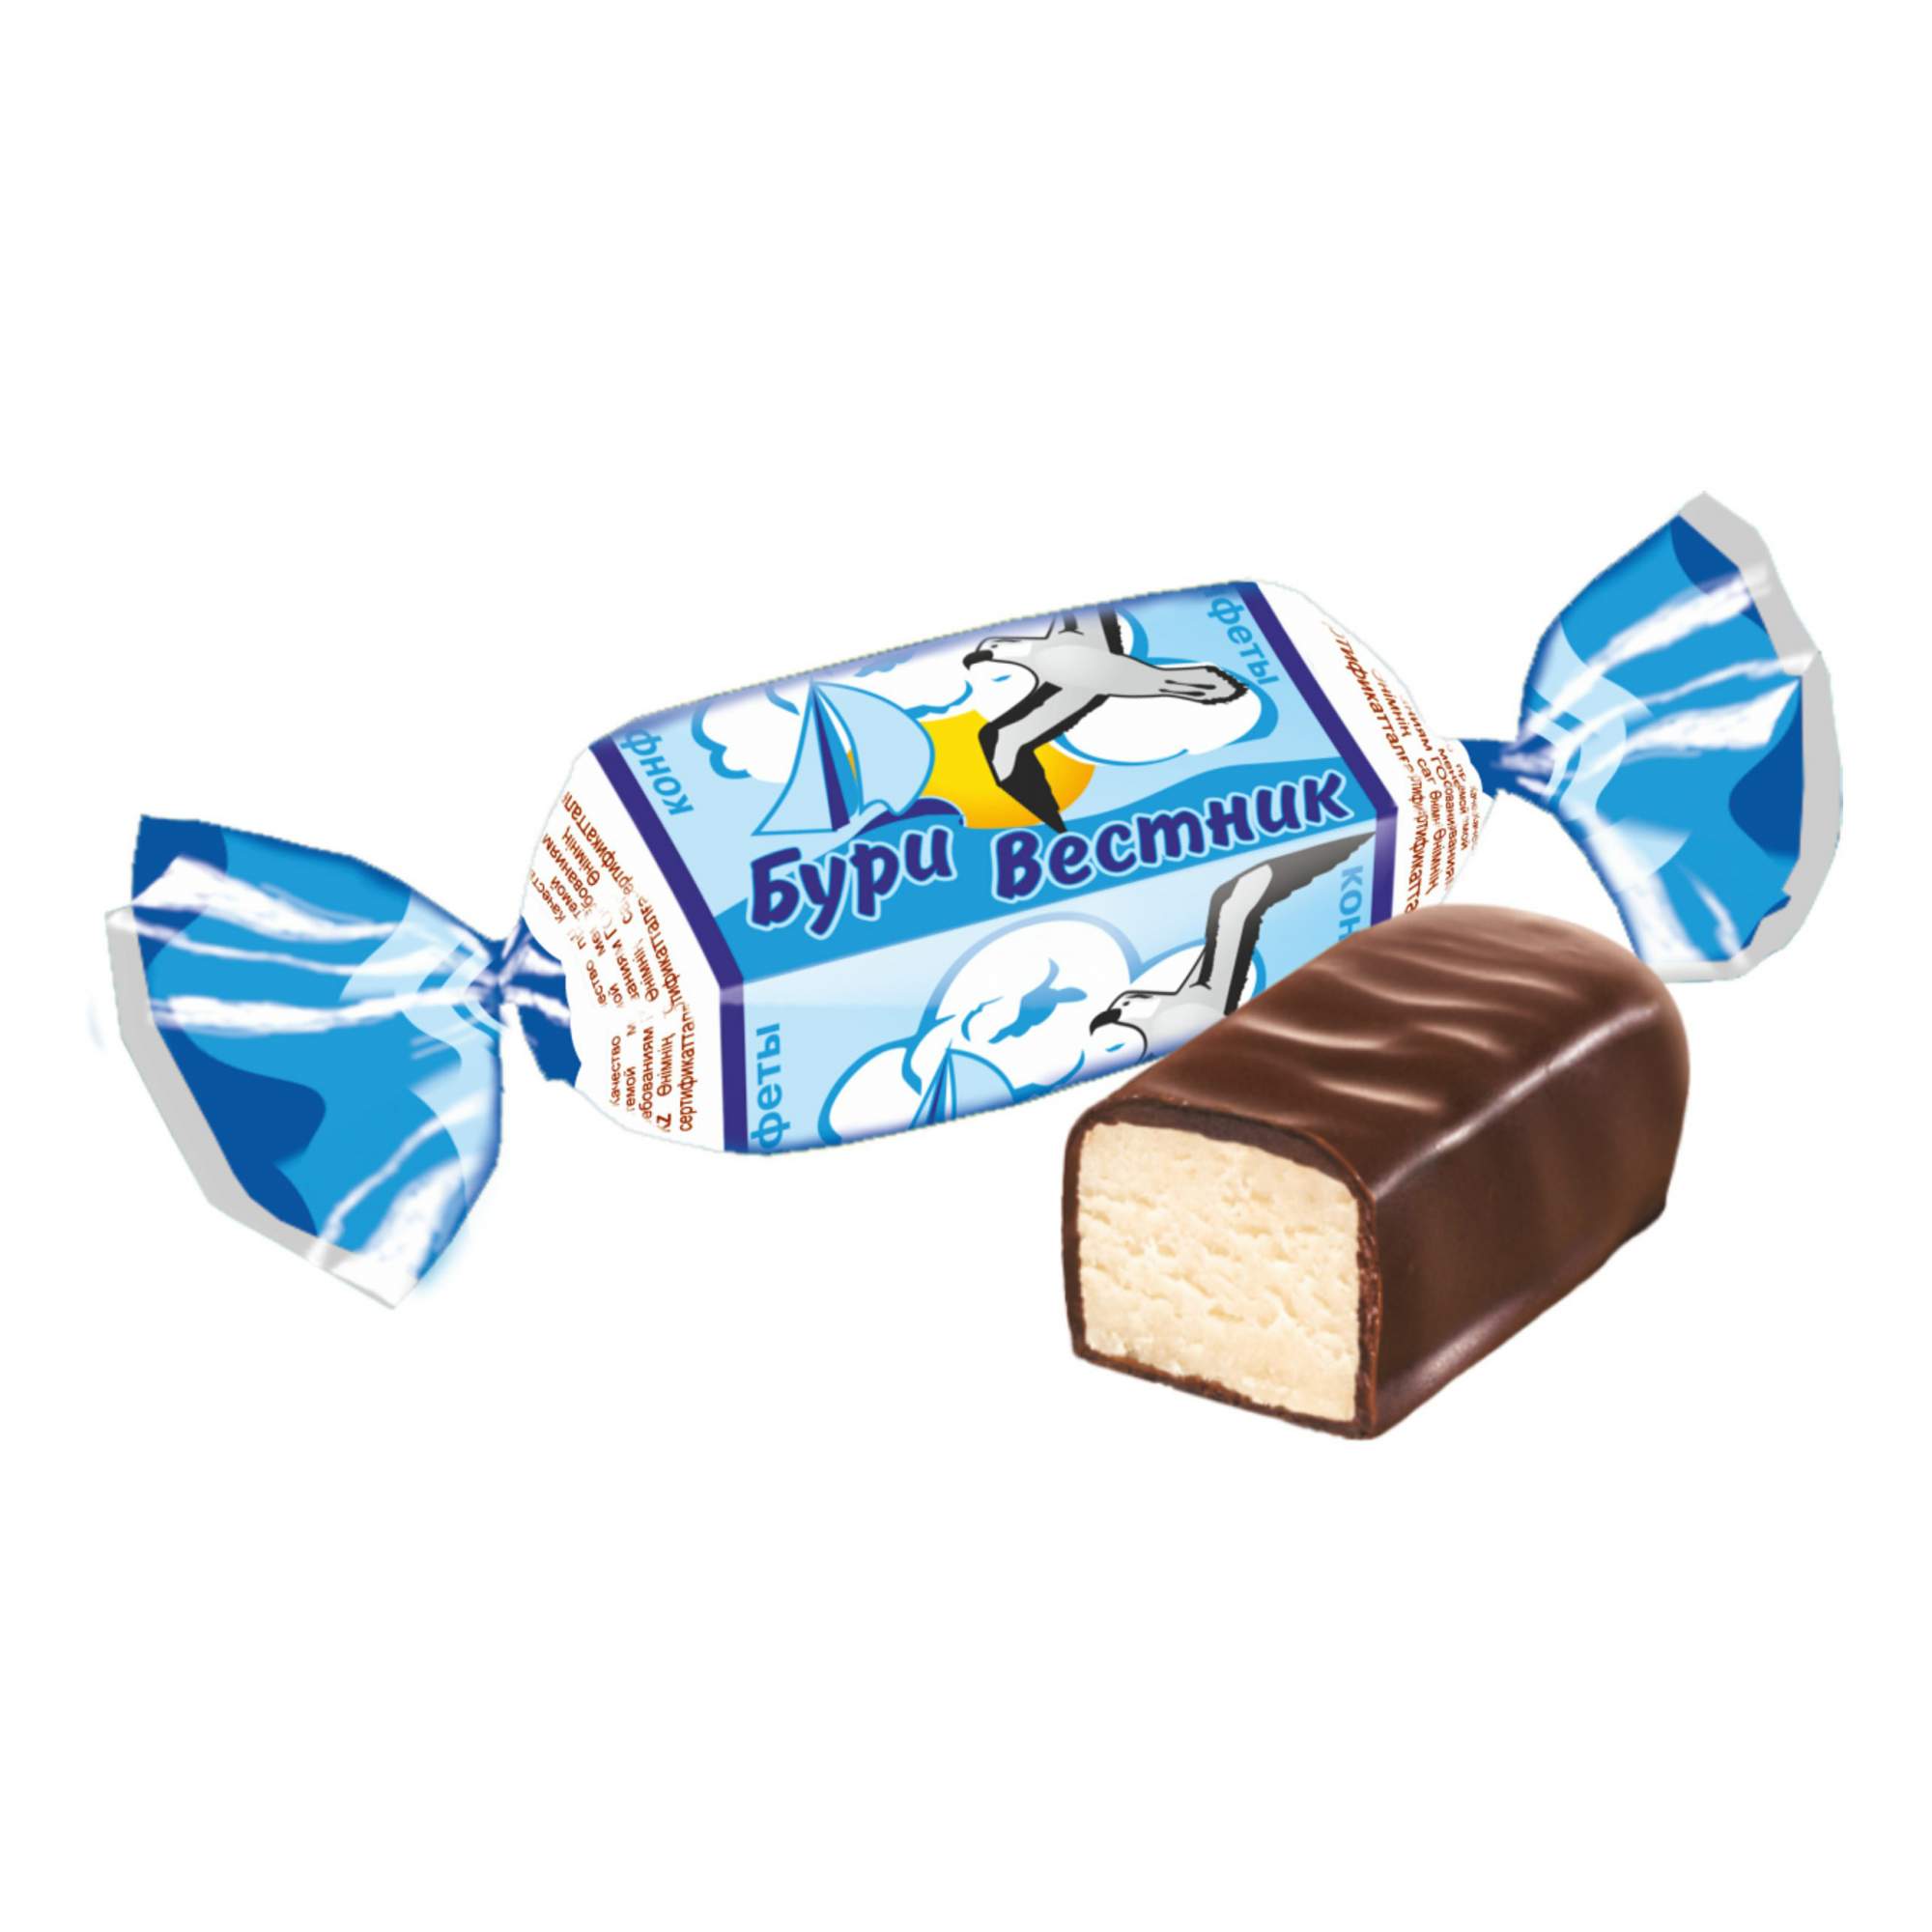 Шоколадные конфеты ШФН Бури вестник +-200 г